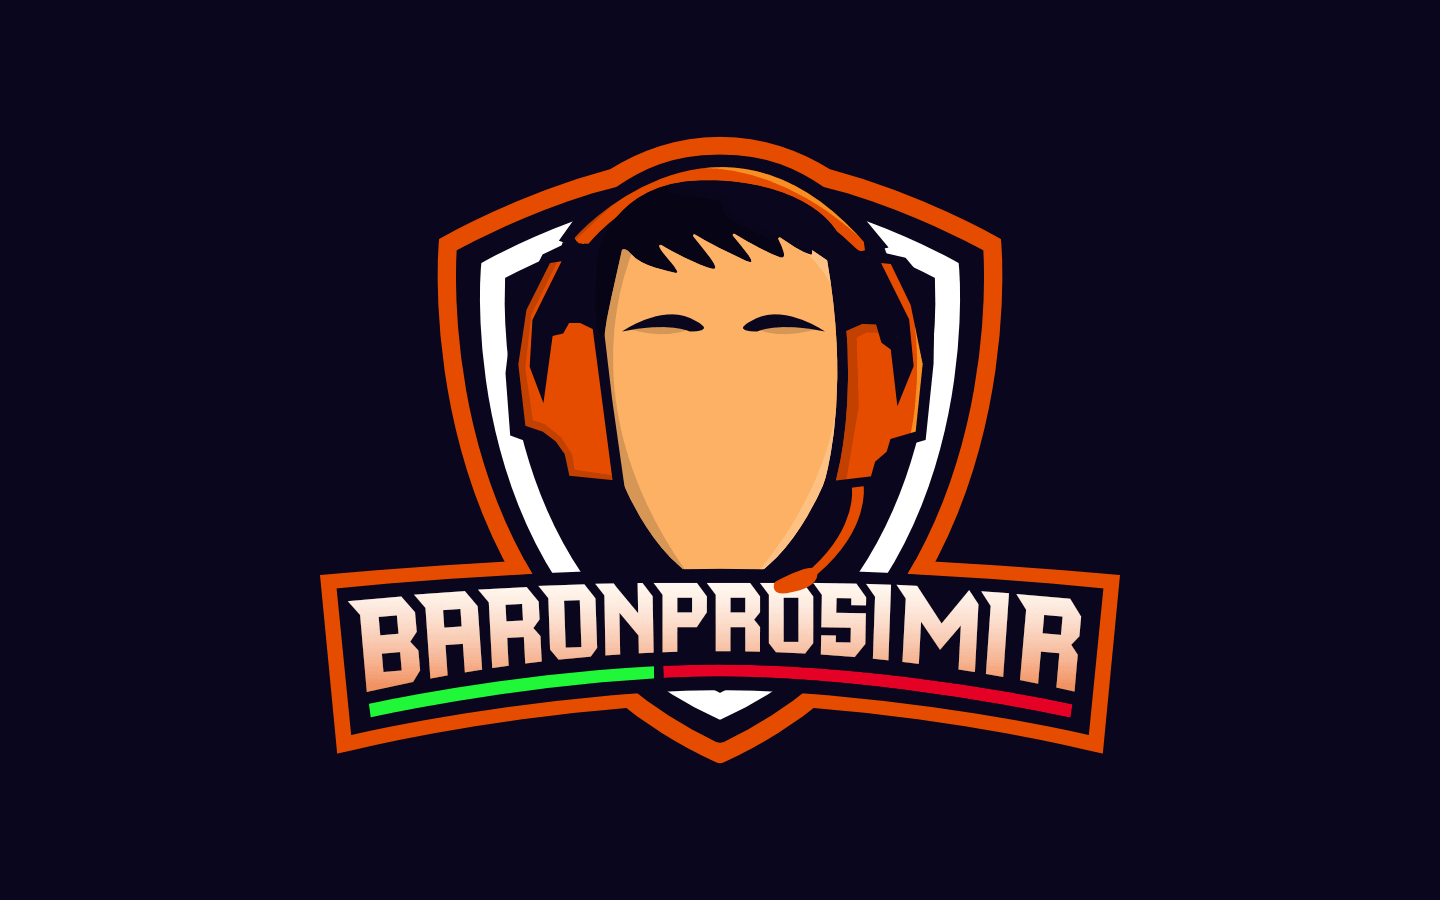 BaronProsimir